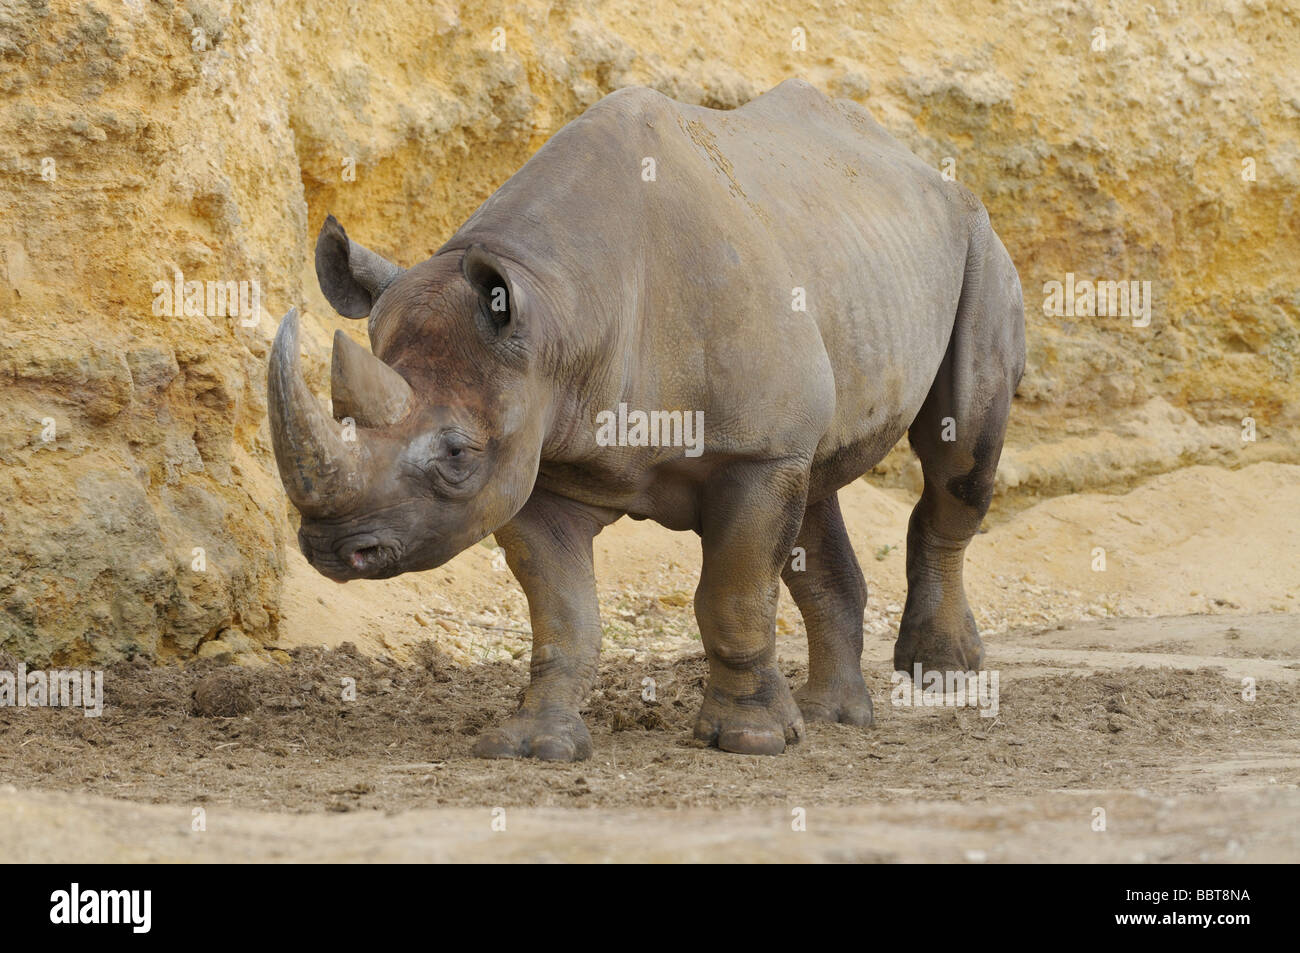 Le rhinocéros noir Diceros bicornis disparition Banque D'Images